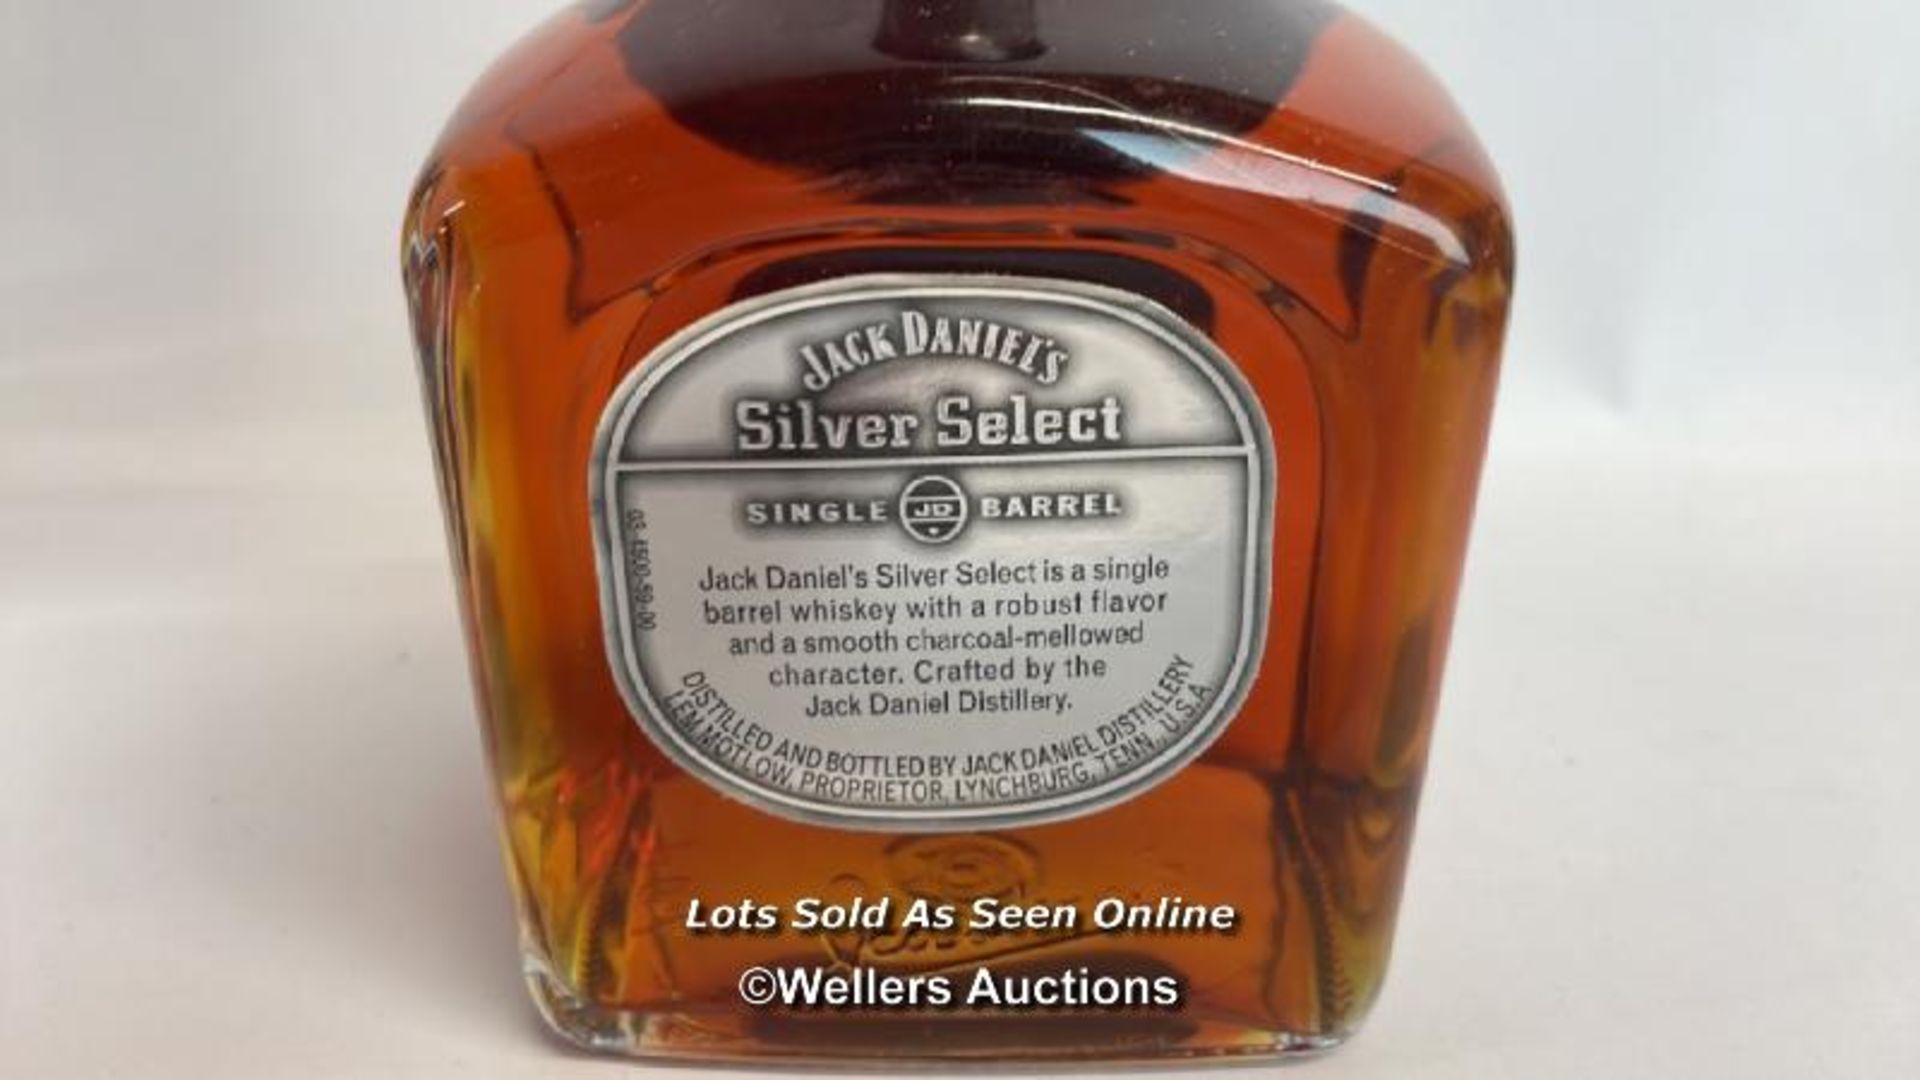 Jack Daniels Silver Select Single Barrel Tennessee Whiskey, Release date: 11-03-99, Barrek no: 9- - Bild 7 aus 8